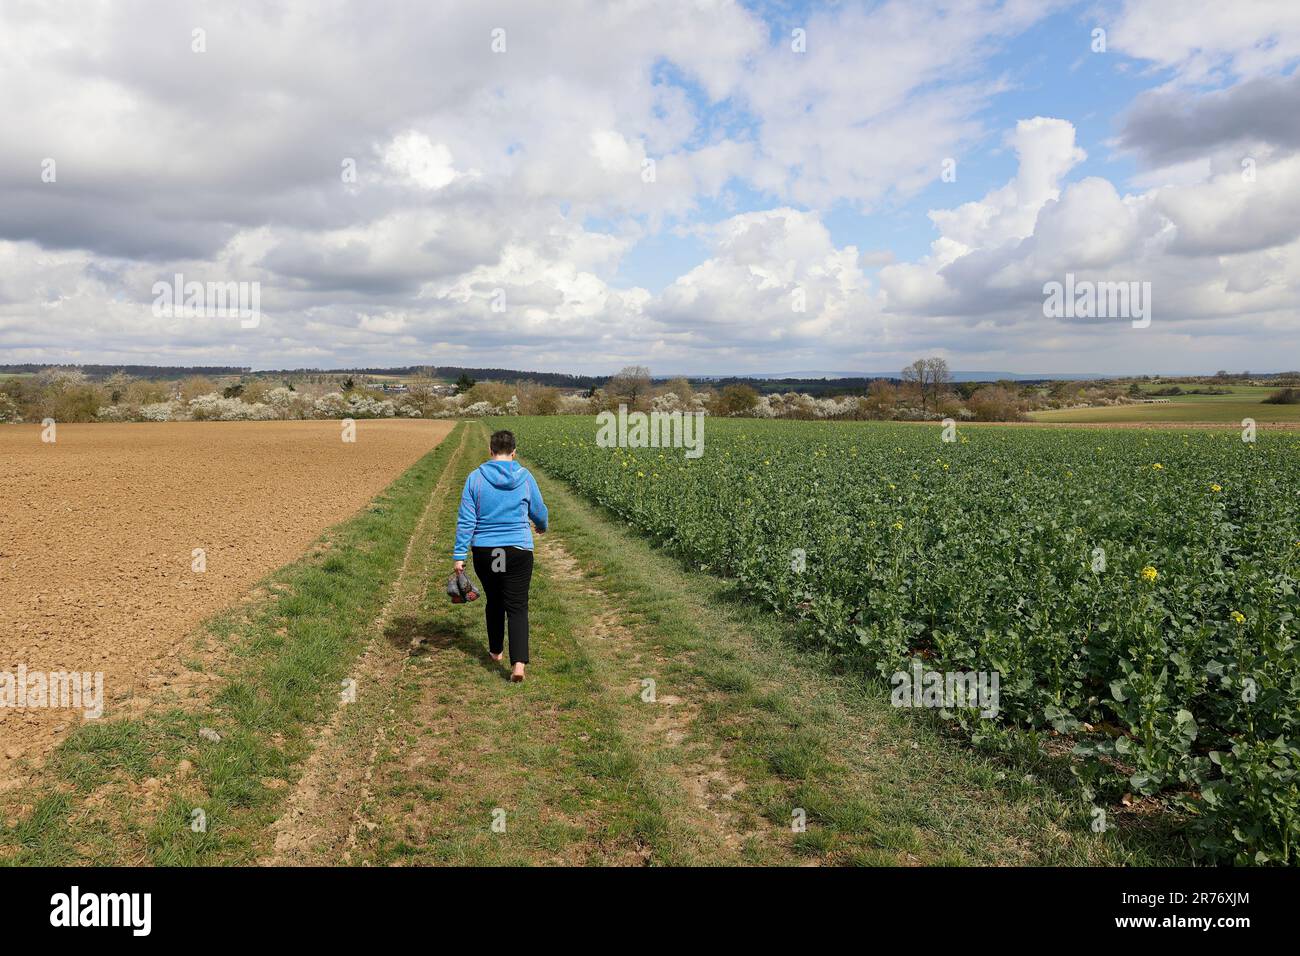 Une femme marche sans chaussures sur une route de terre Banque D'Images